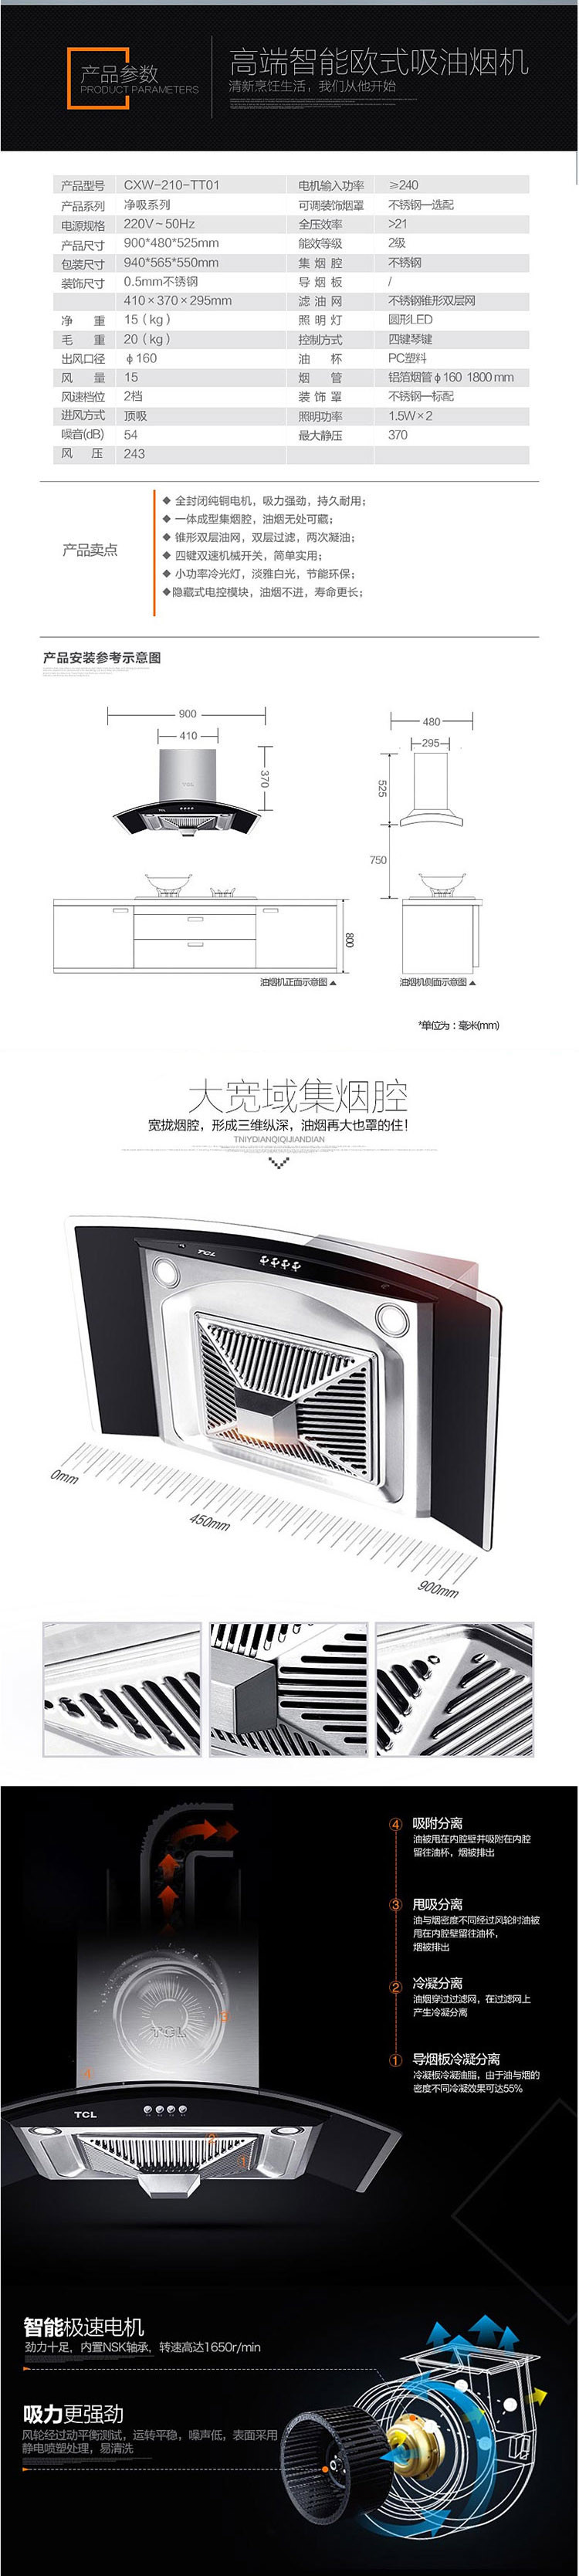 【邮乐新乡馆】TCL抽油烟机CXW-210-TT01高端智能抽油机